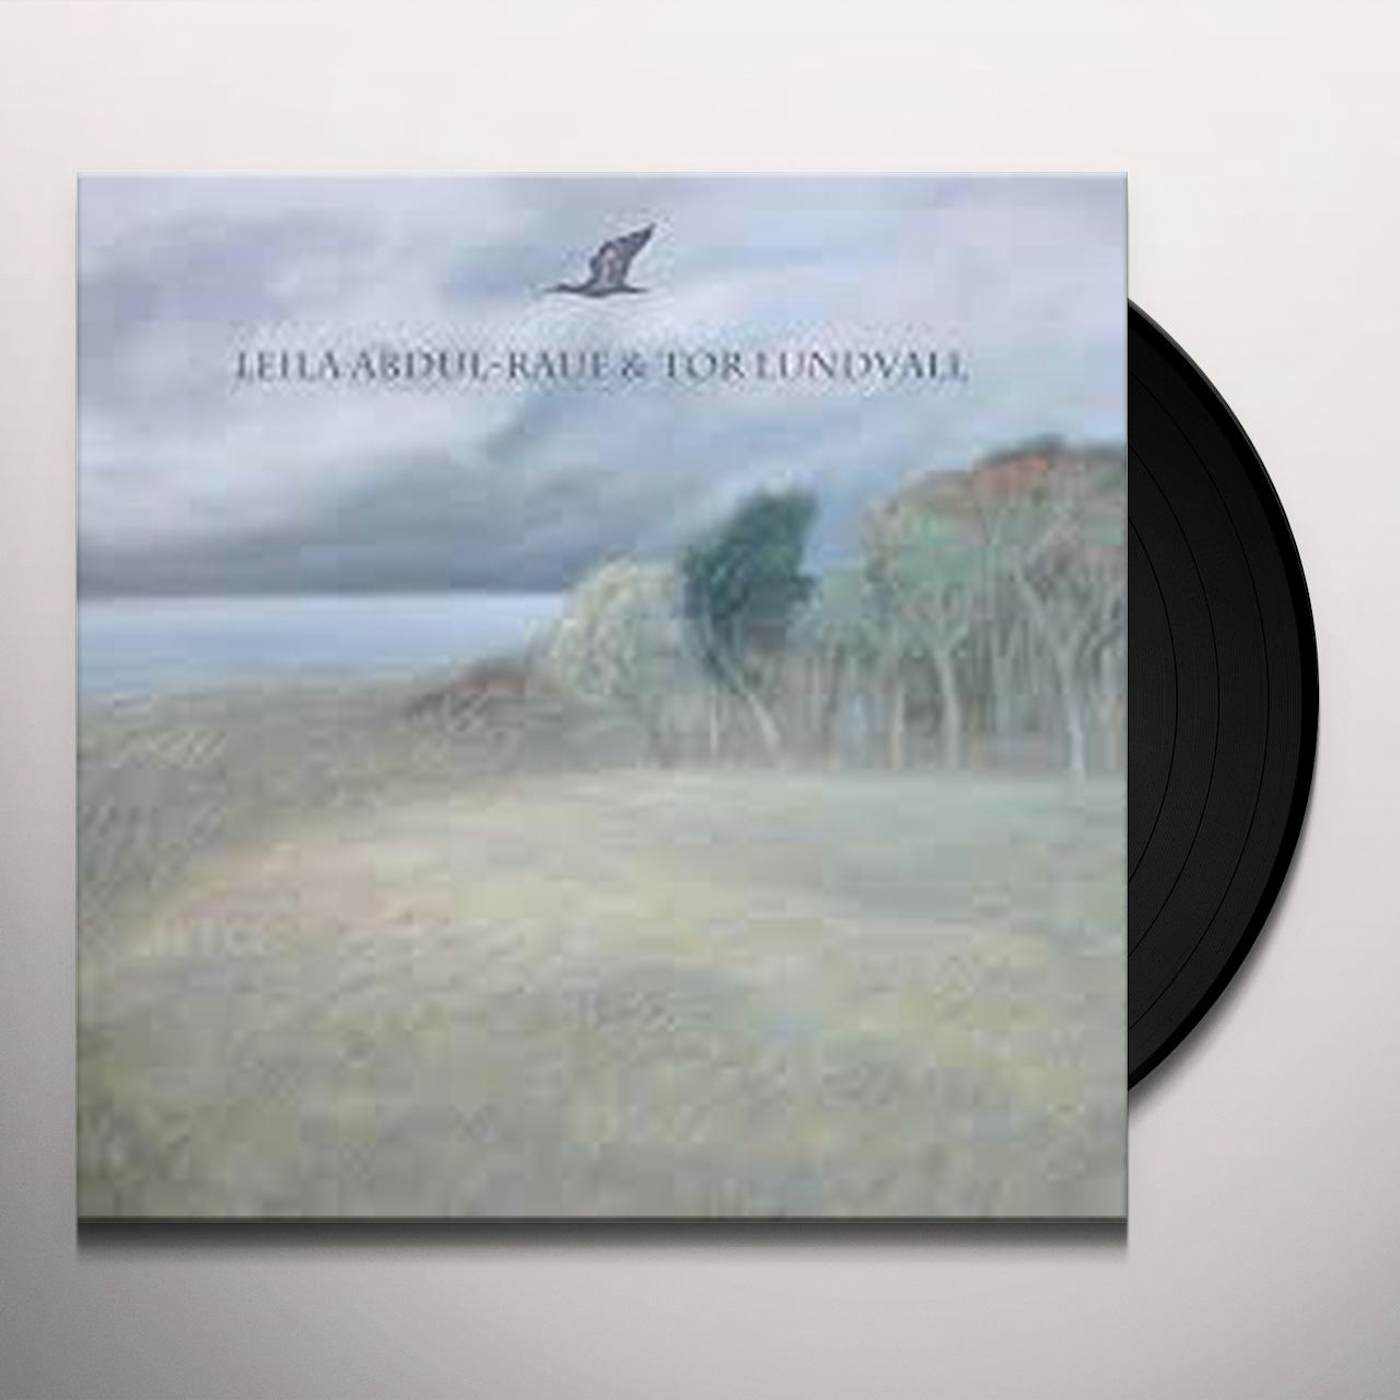 Leila Abdul-Rauf / Tor Lundvall Ibis / Quiet Seaside Vinyl Record